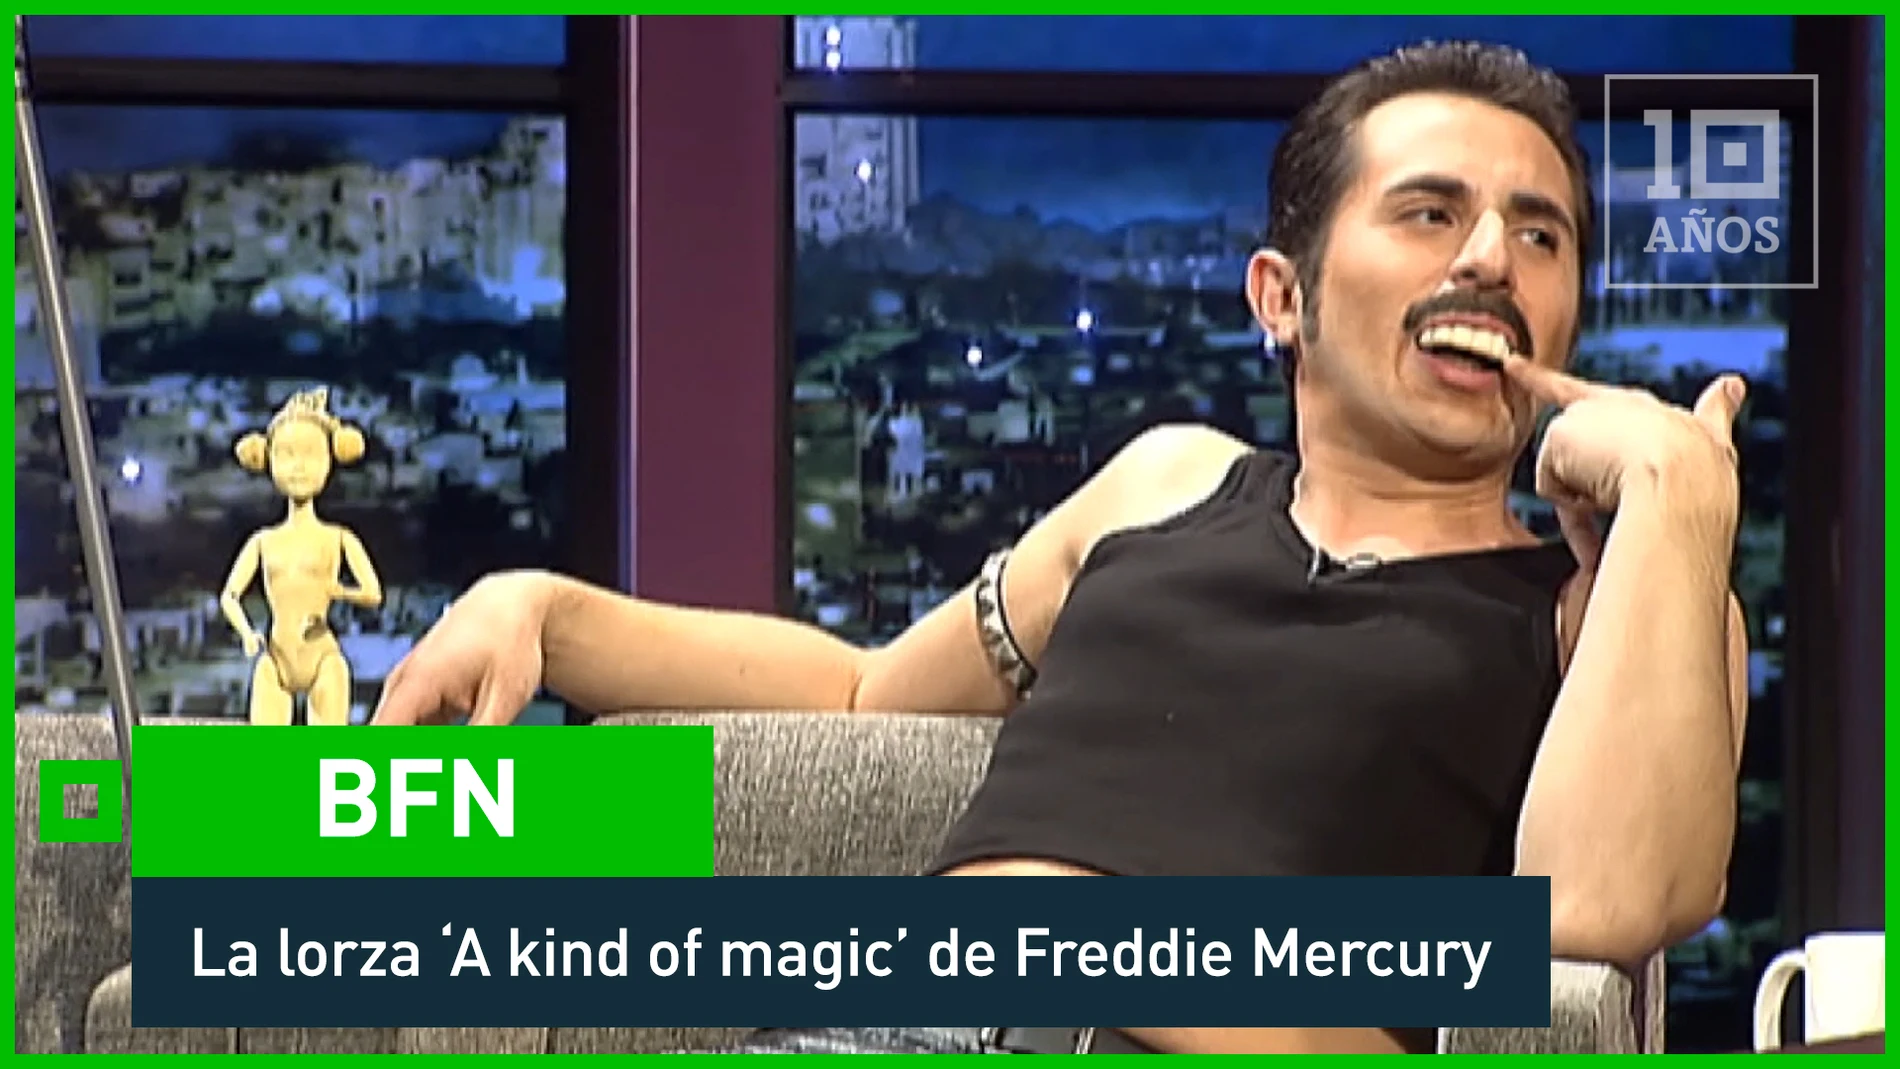 2011. Freddie Mercury luce ‘lorza’ en el plató de BFN - laSexta 15º aniversario